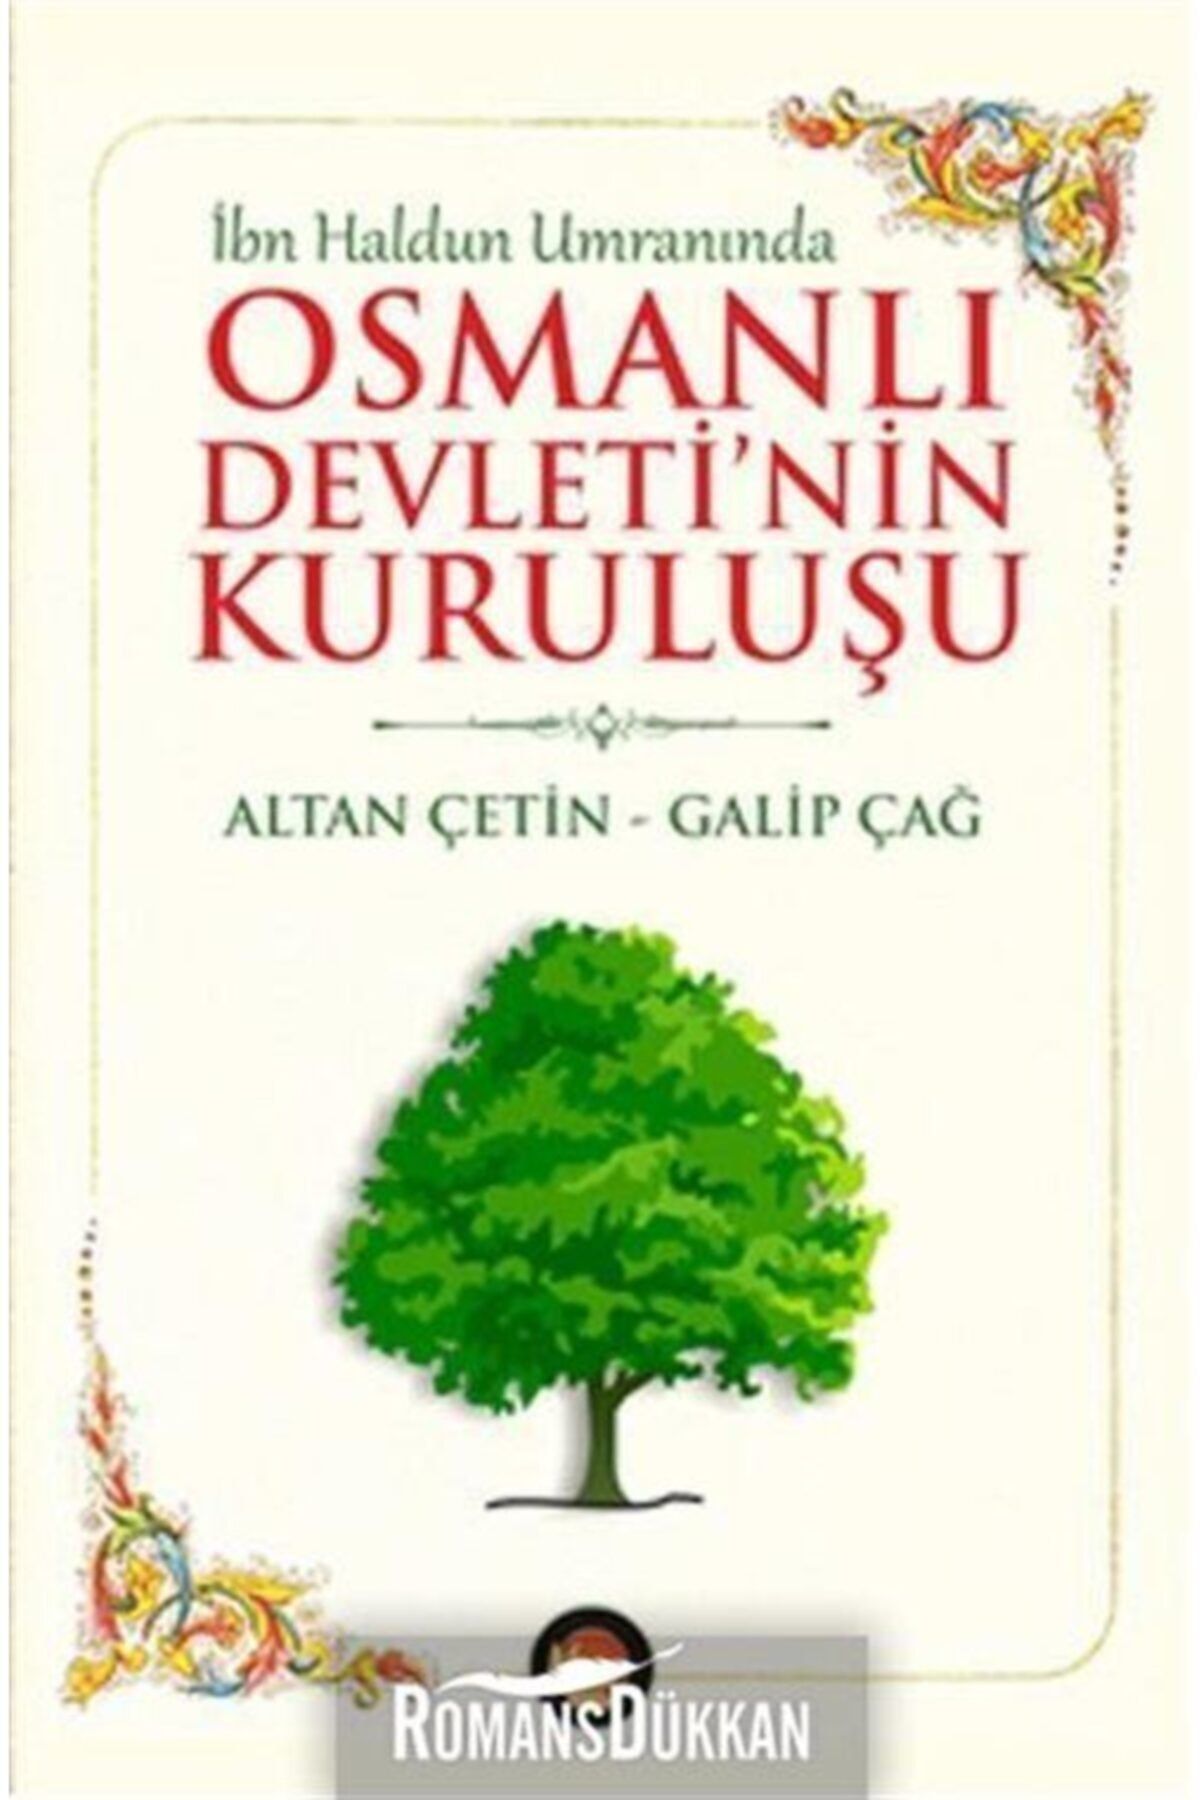 Lotus Yayın Grubu Osmanlı Devleti'nin Kuruluşu & Ibn Haldun Umranında